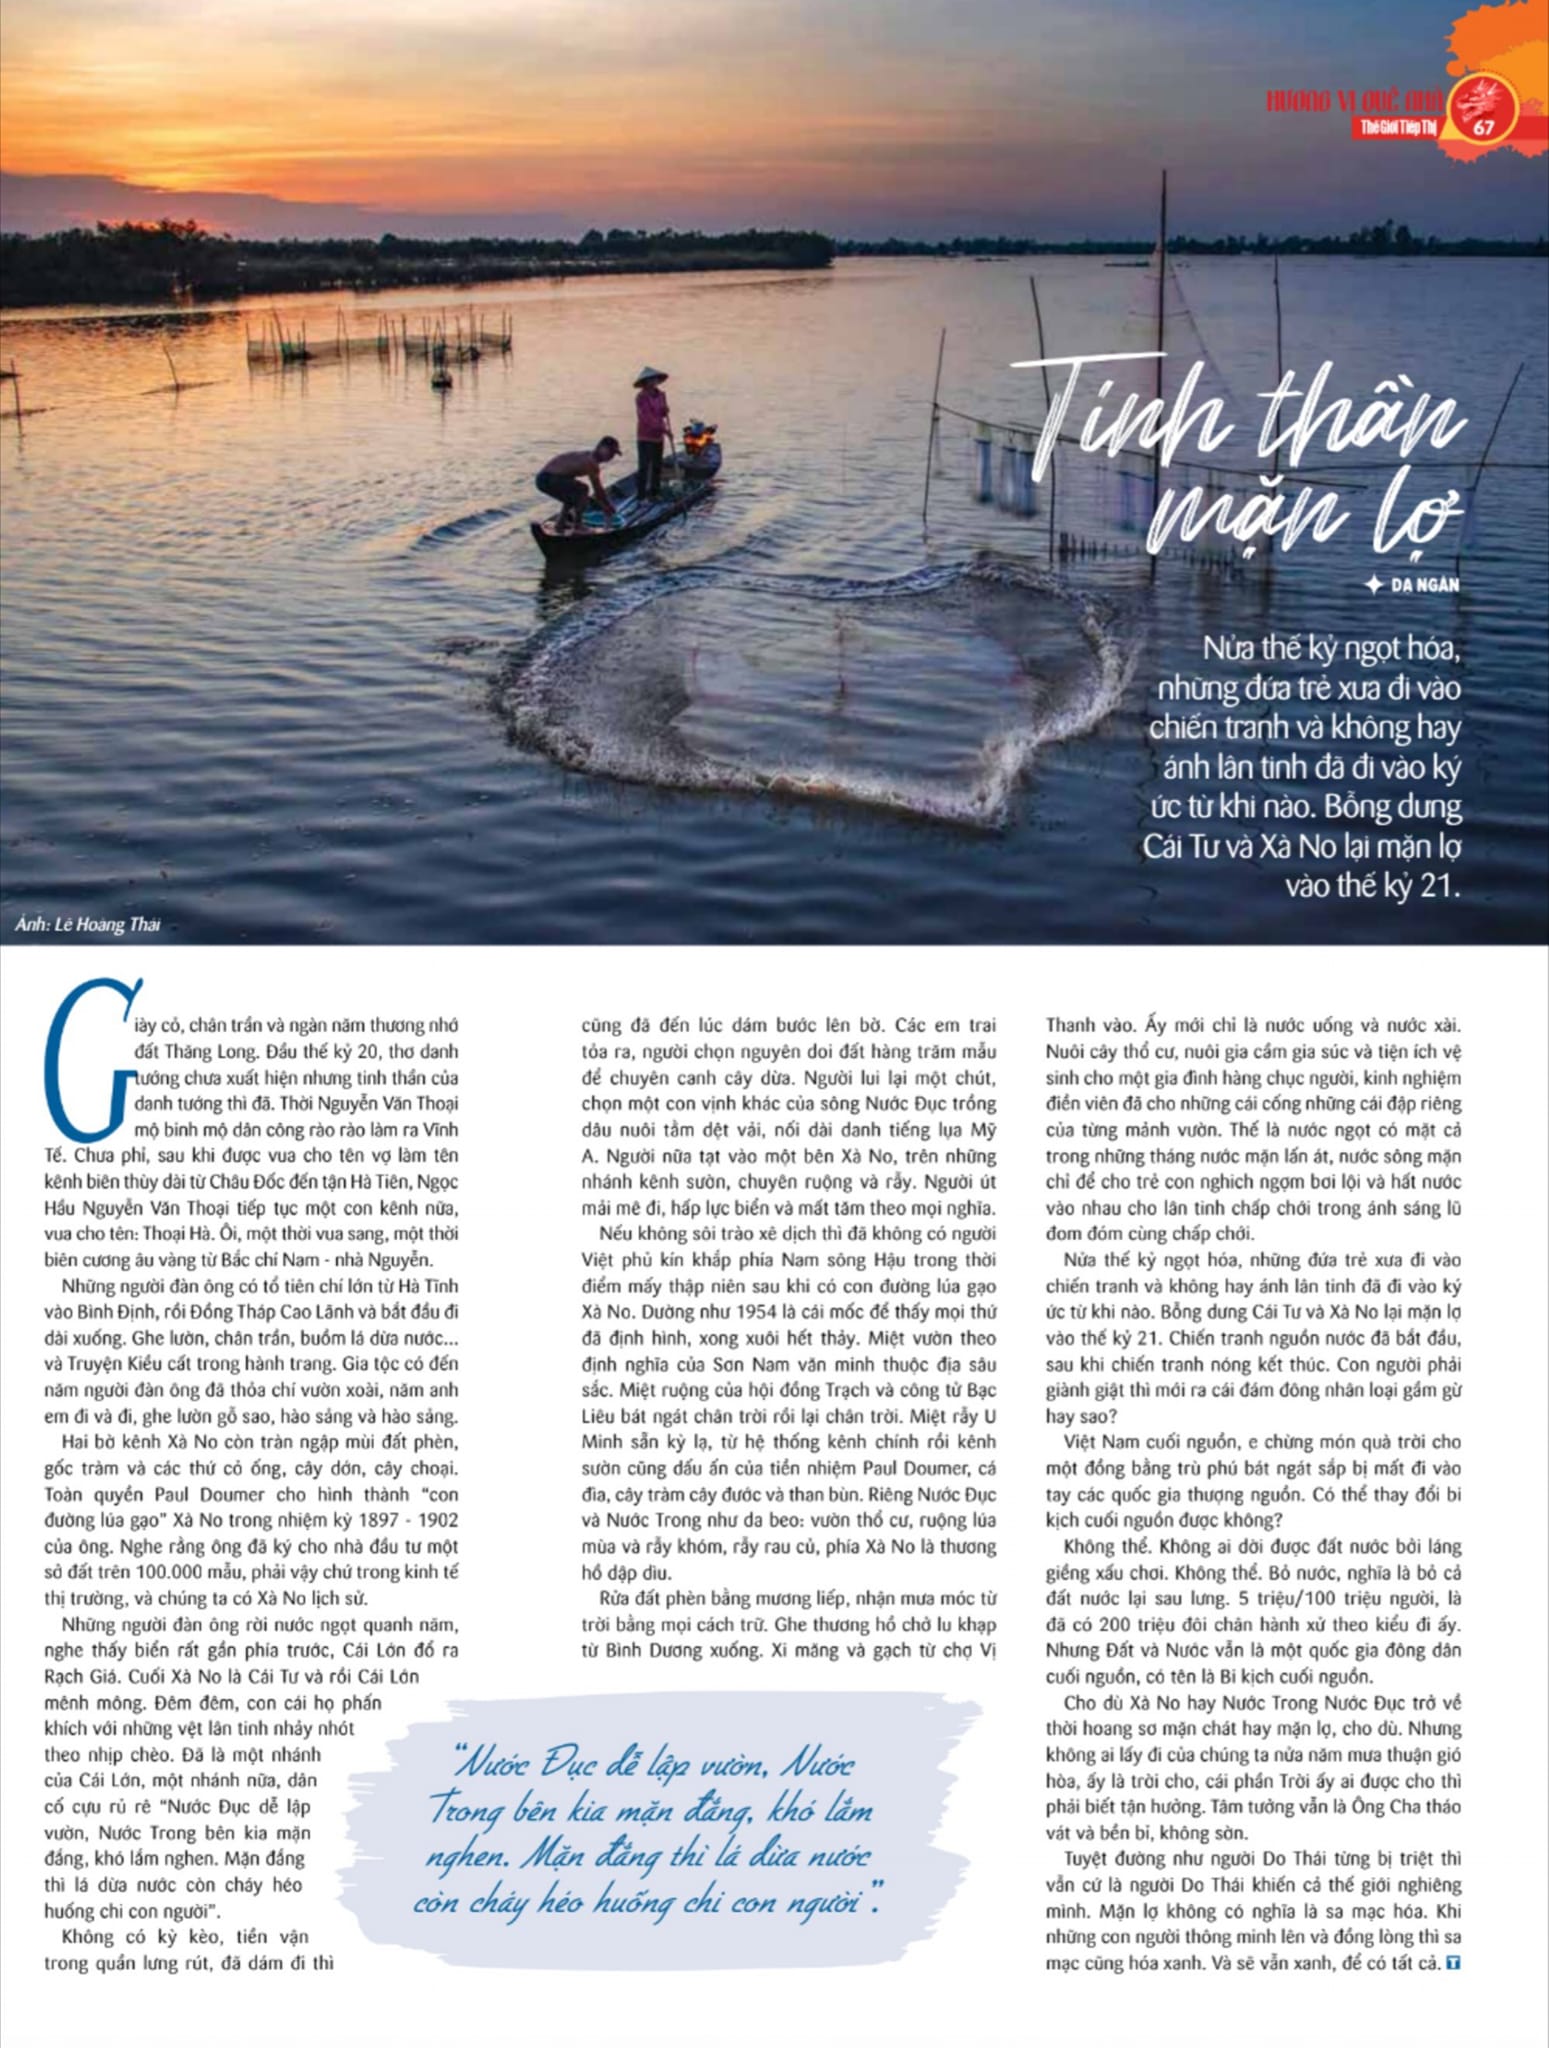 Mời bạn đón đọc Đặc san Xuân Thế Giới Tiếp Thị: Những câu chuyện về kinh tế và văn hoá sông nước Nam bộ- Ảnh 2.